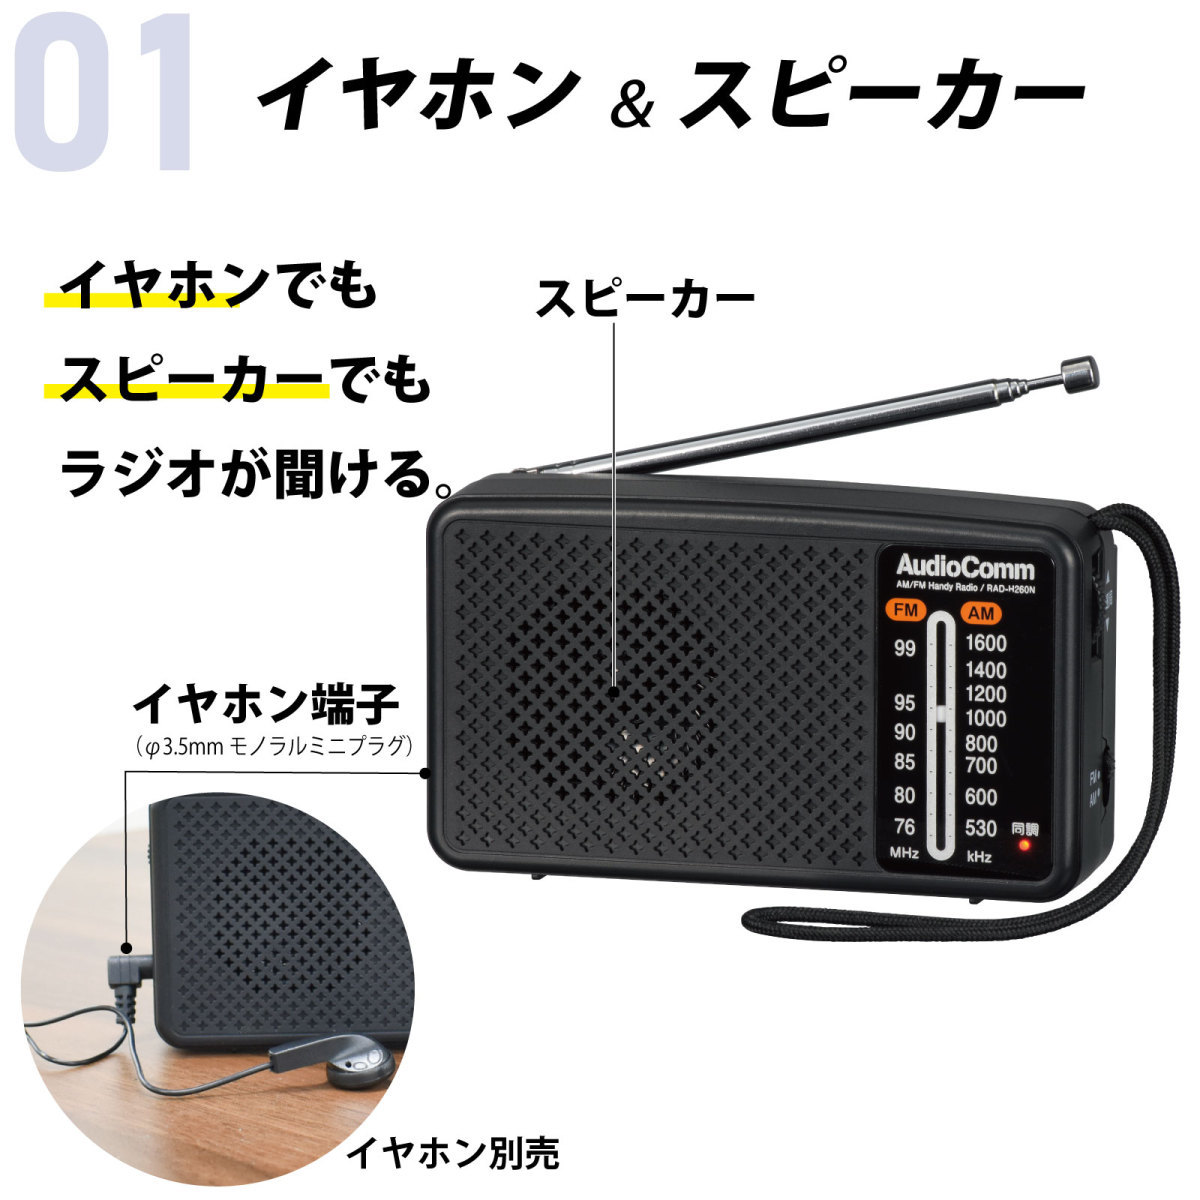 ラジオ 小型 防災ラジオ スタミナハンディラジオ AudioComm｜RAD-H260N 03-5530 オーム電機_画像2